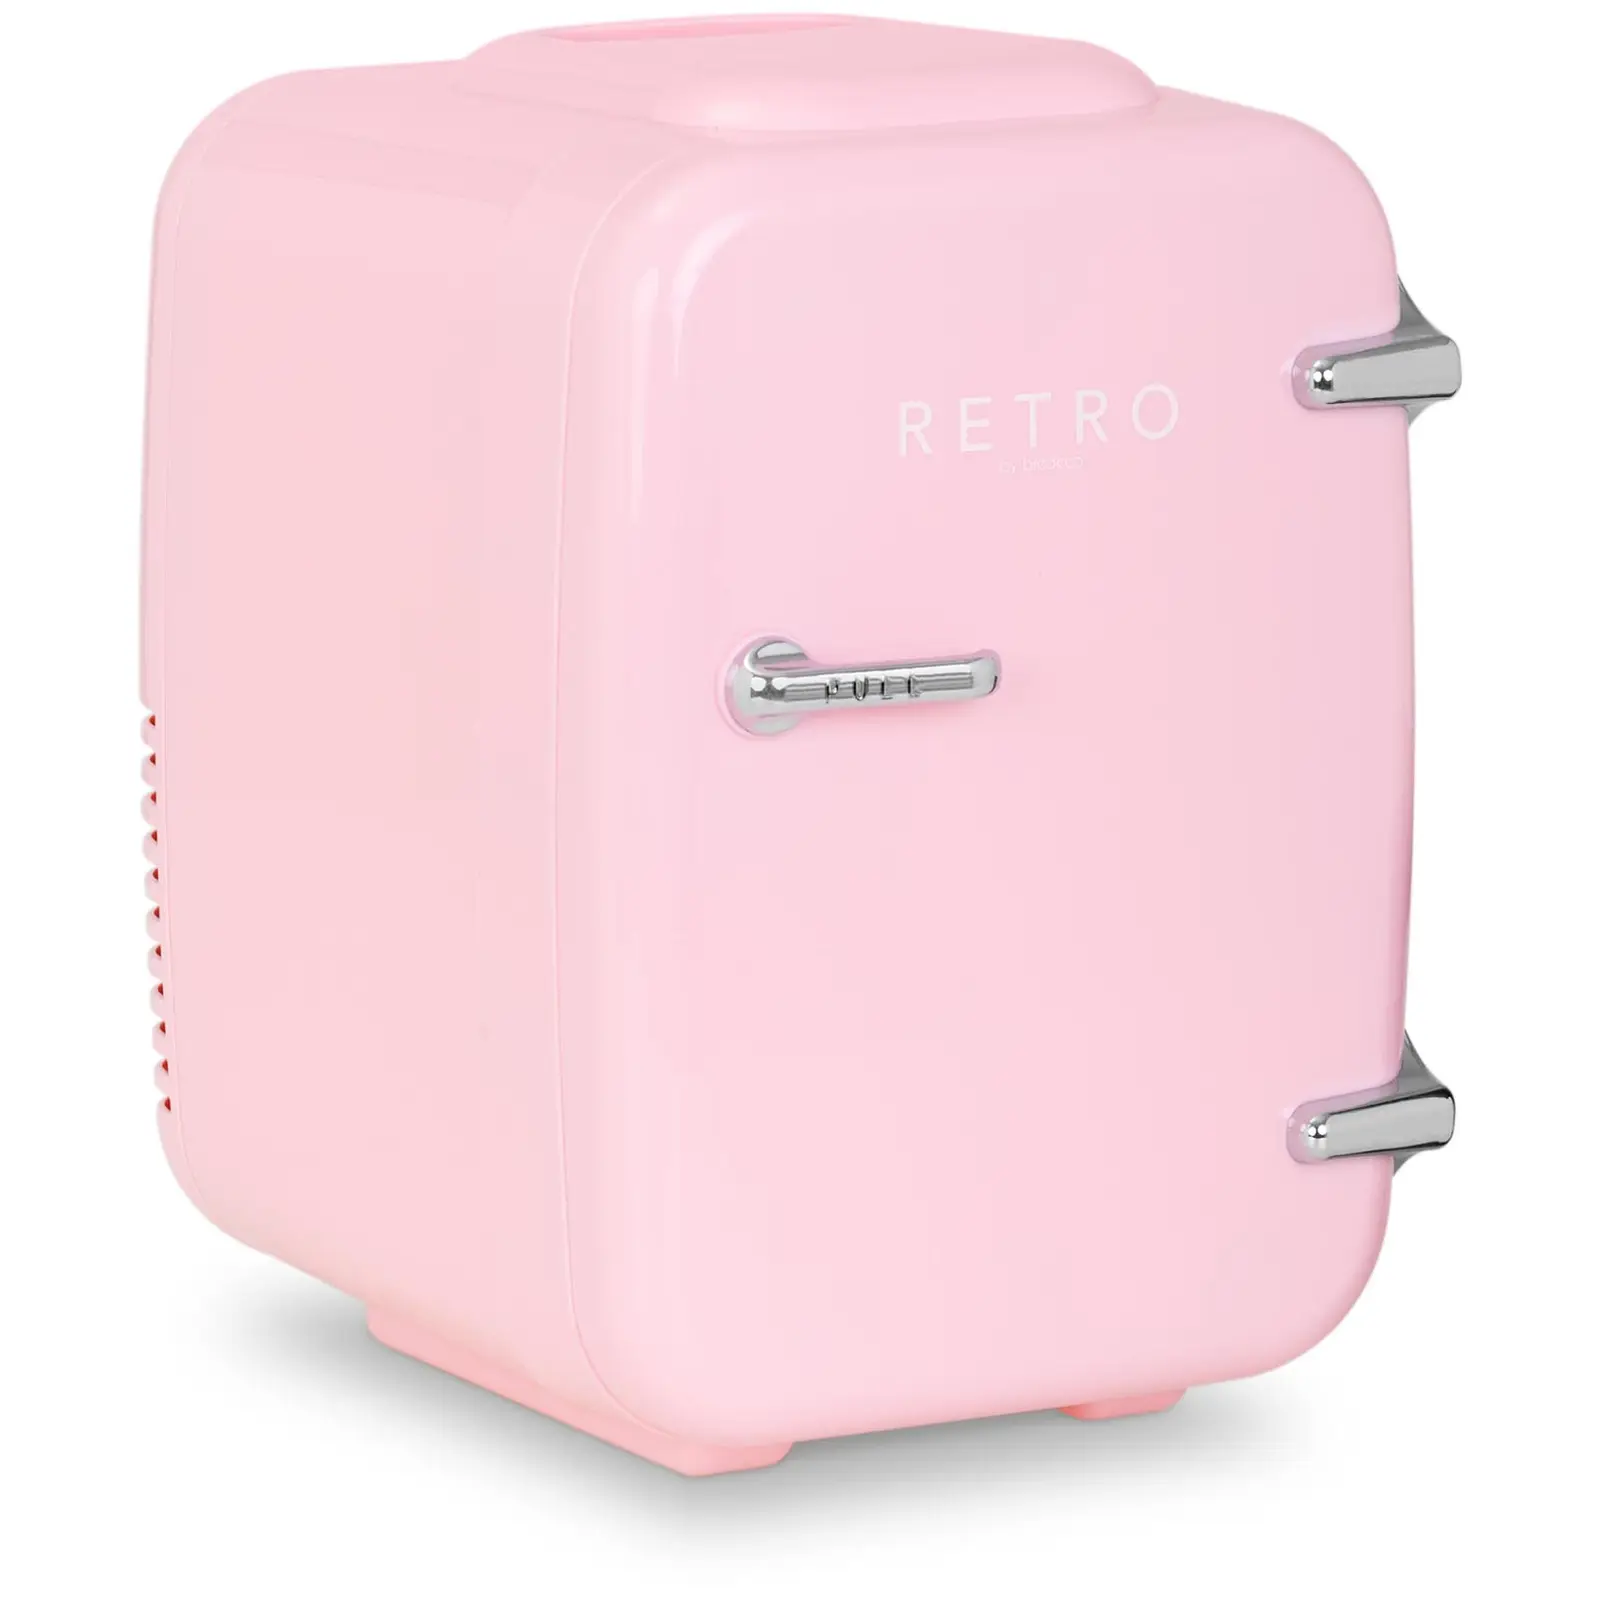 Mini Refrigerator - 4 L - pink